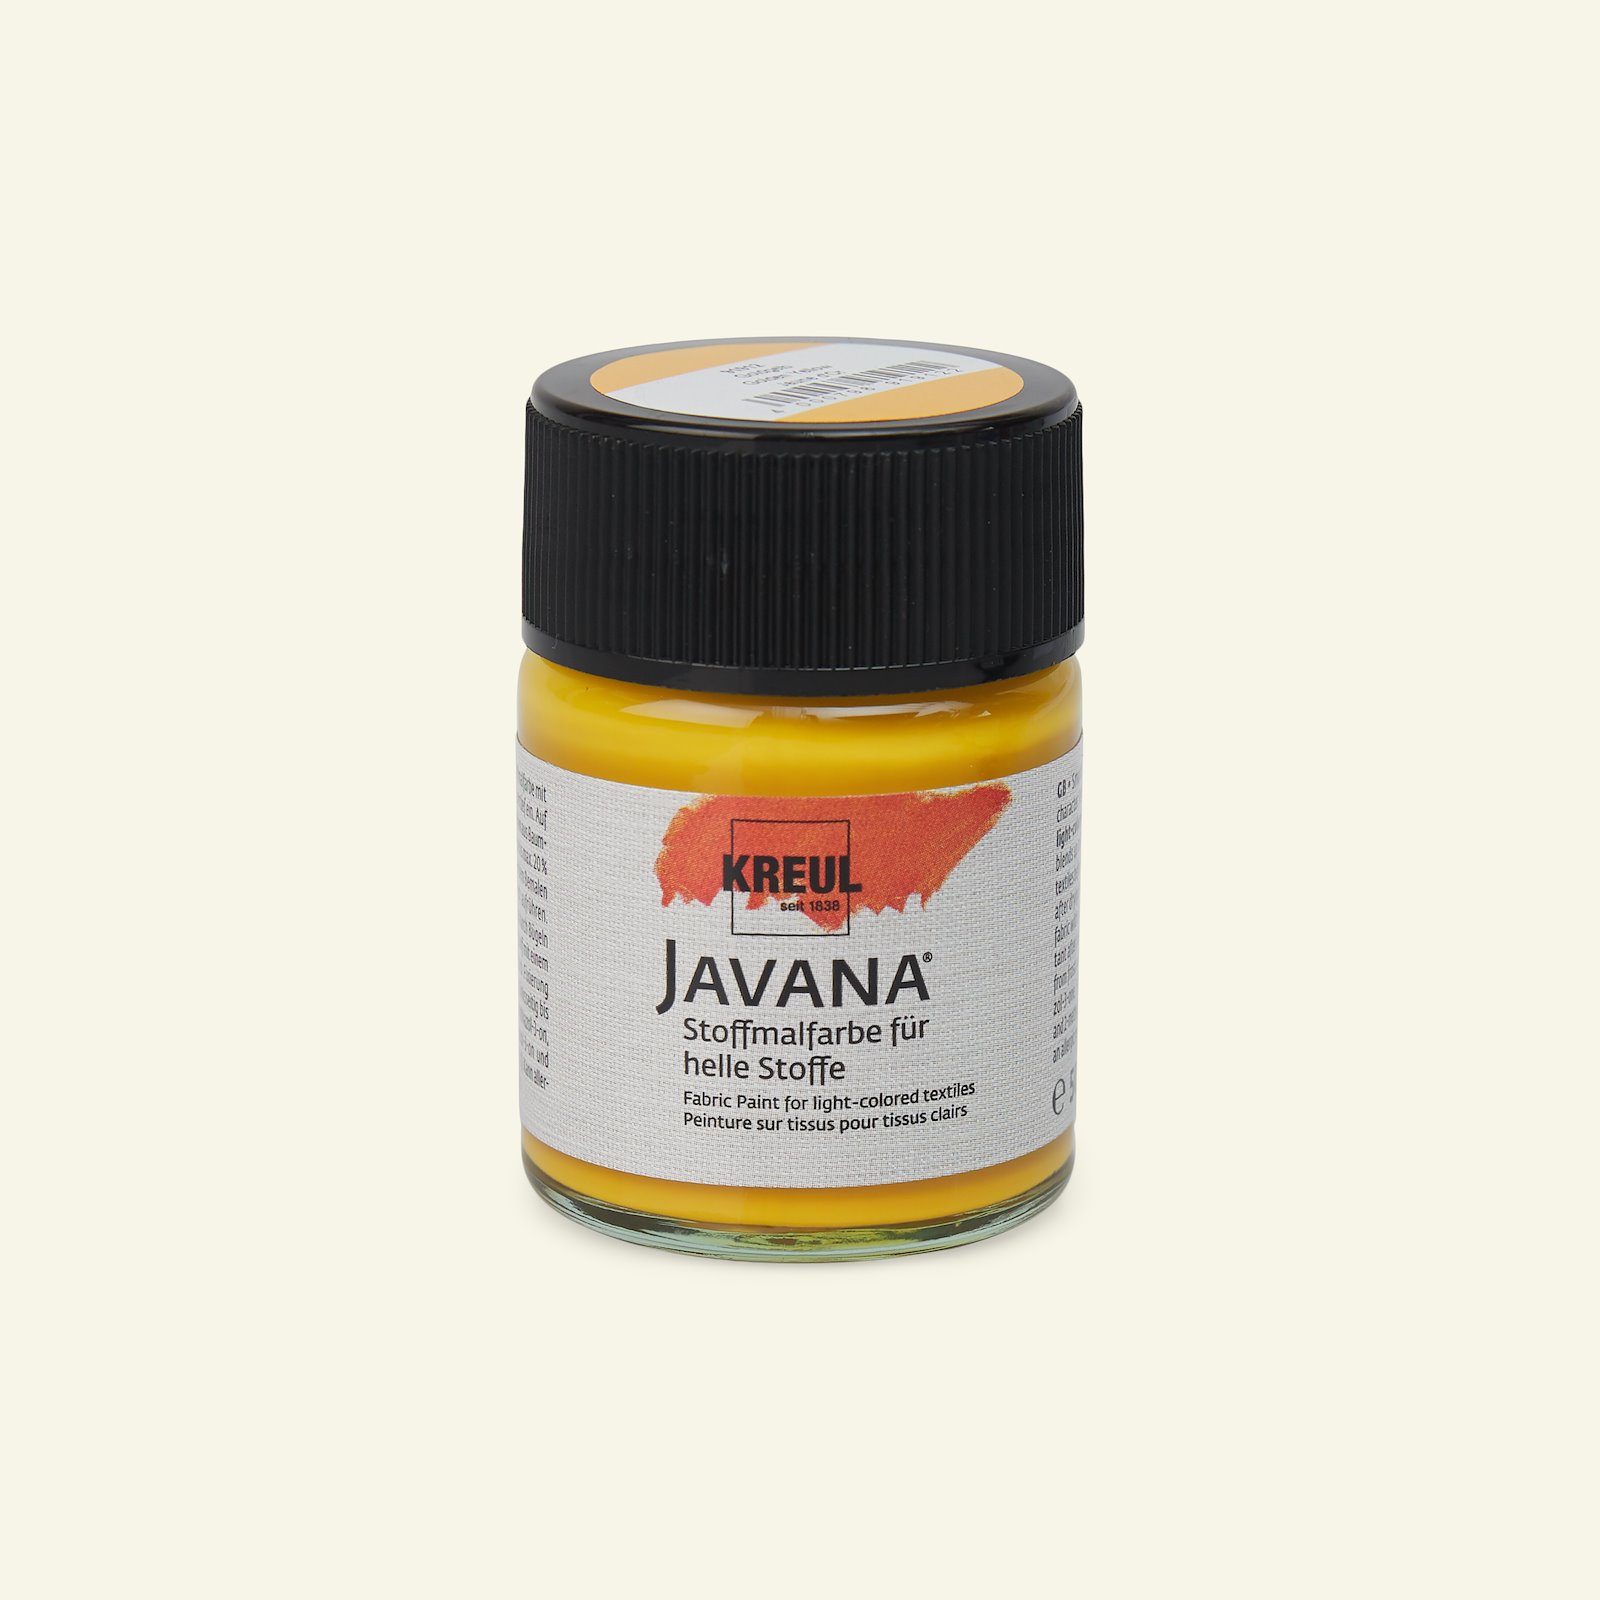 Javana Textilfarbe, Golden, 50ml 29602_pack_b